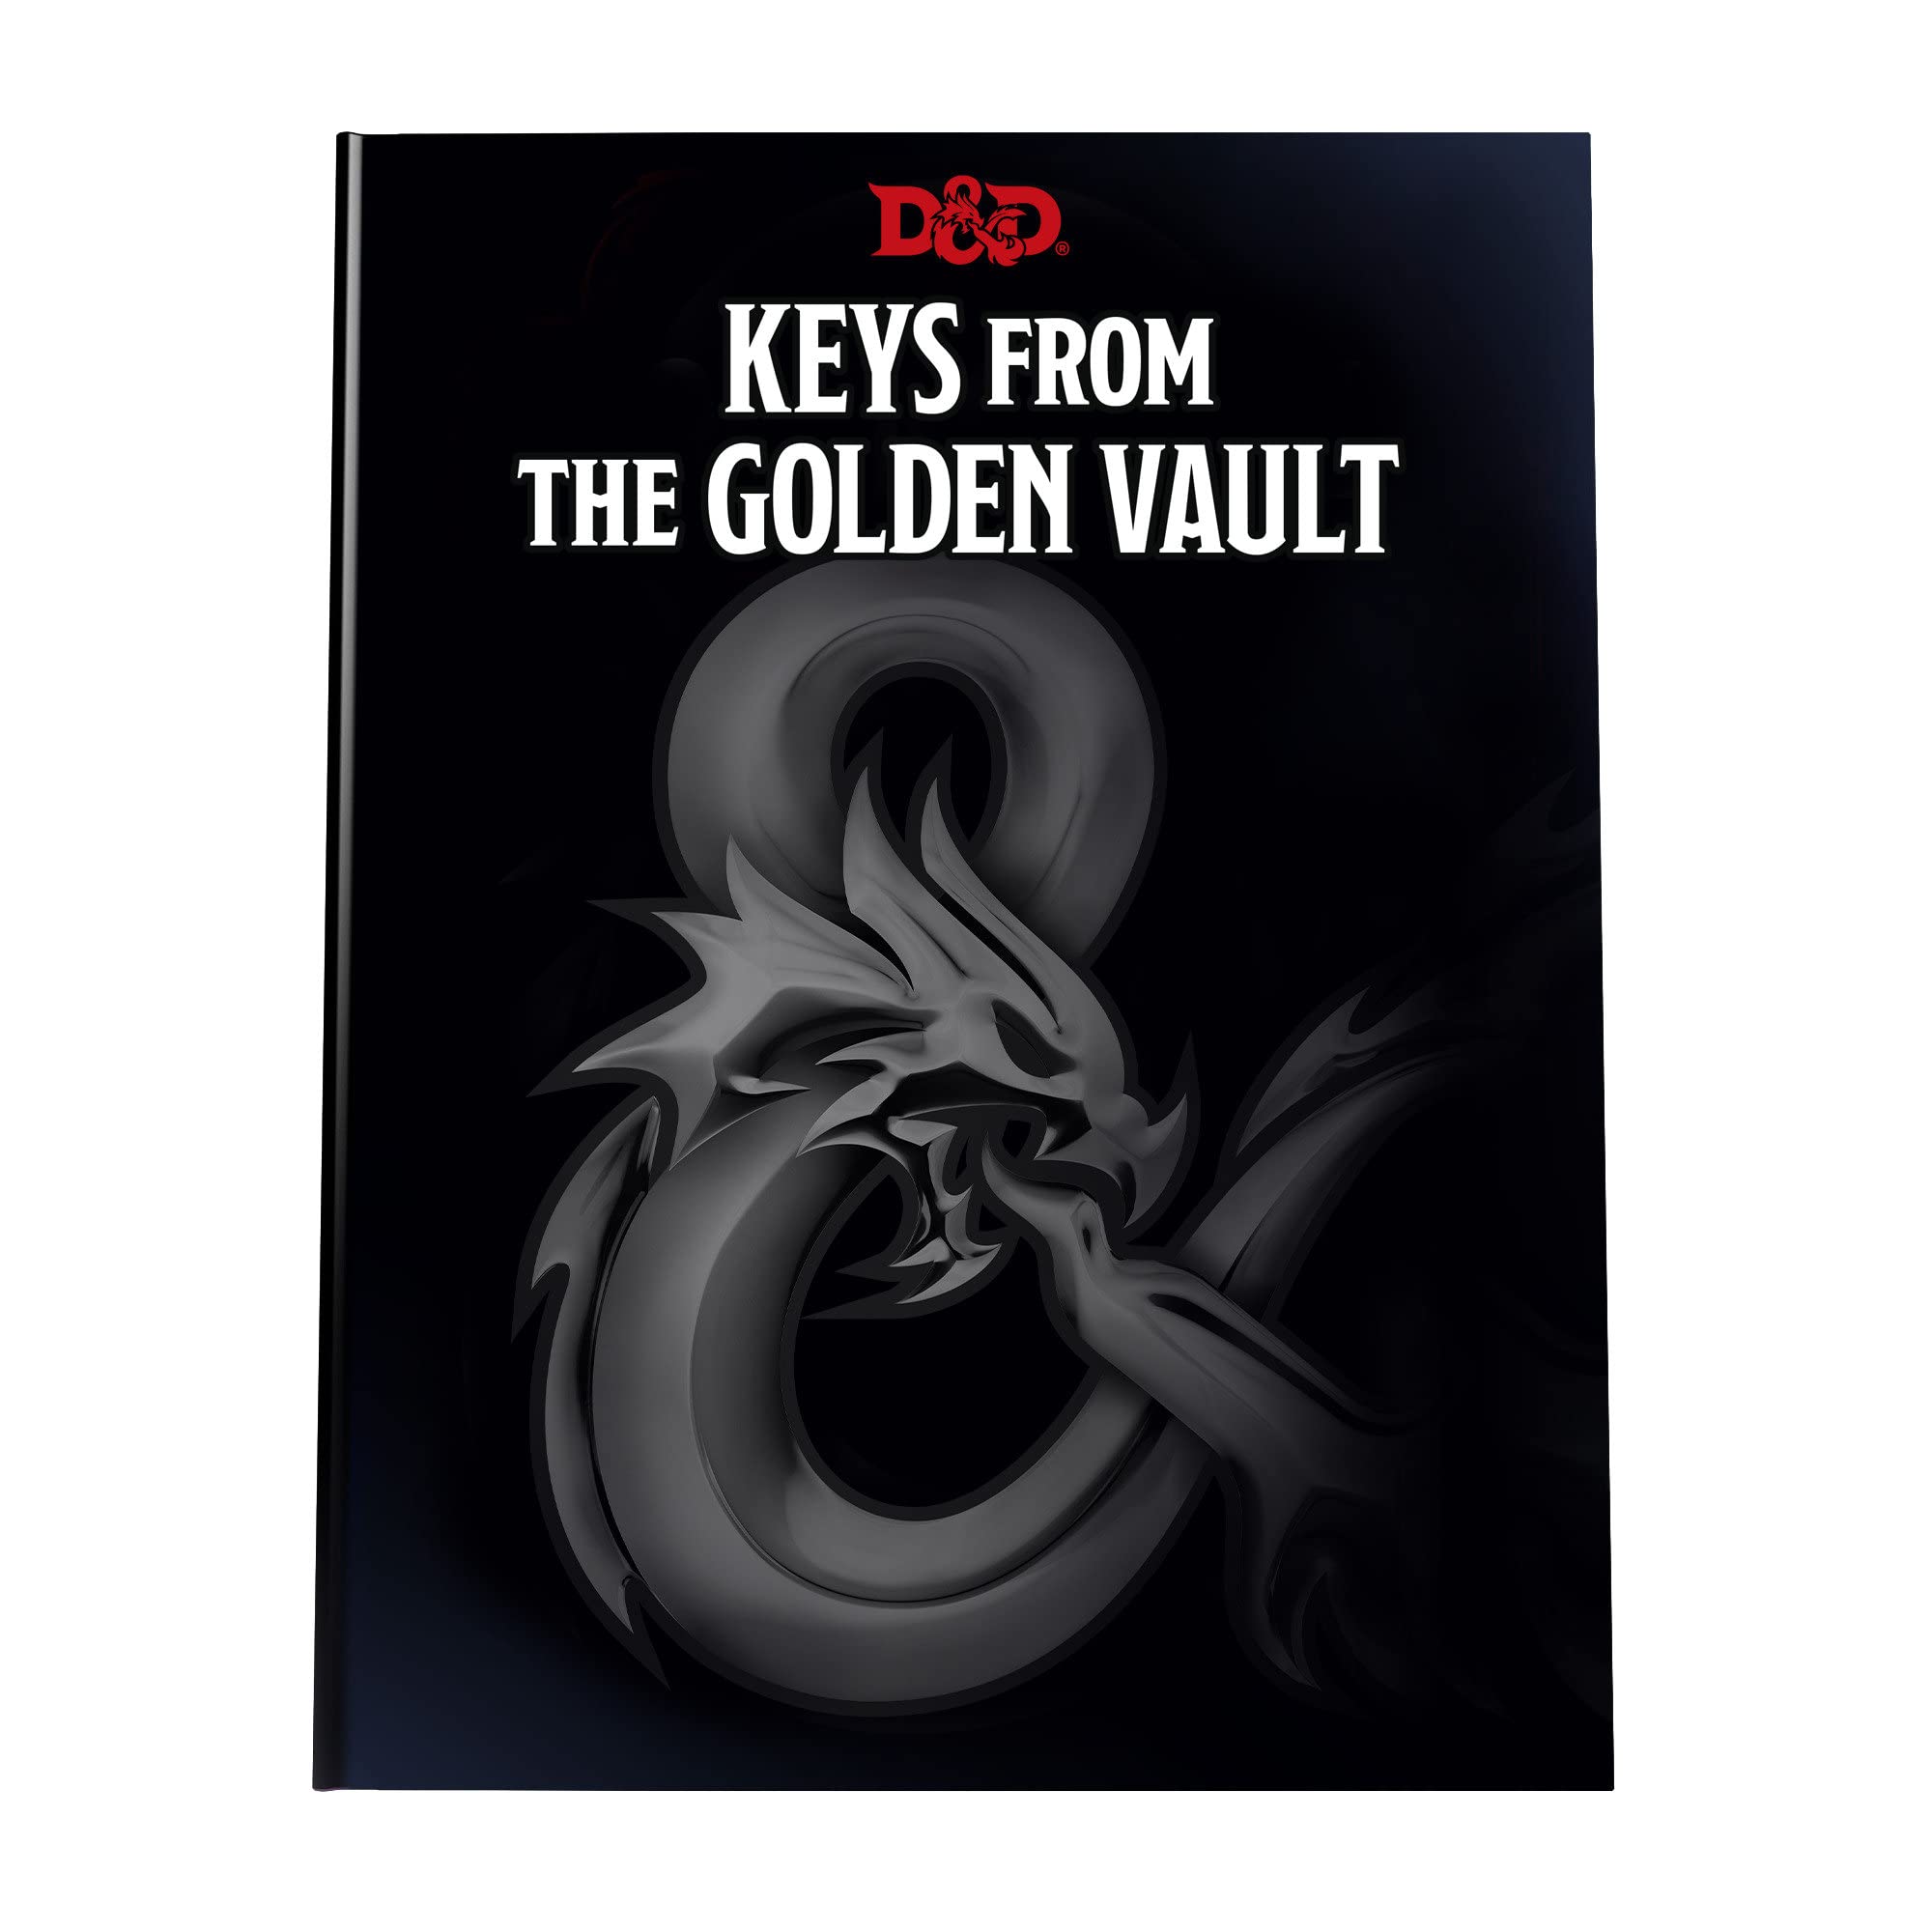 D&D: Keys from the Golden Vault - Alternate Art Hardcover